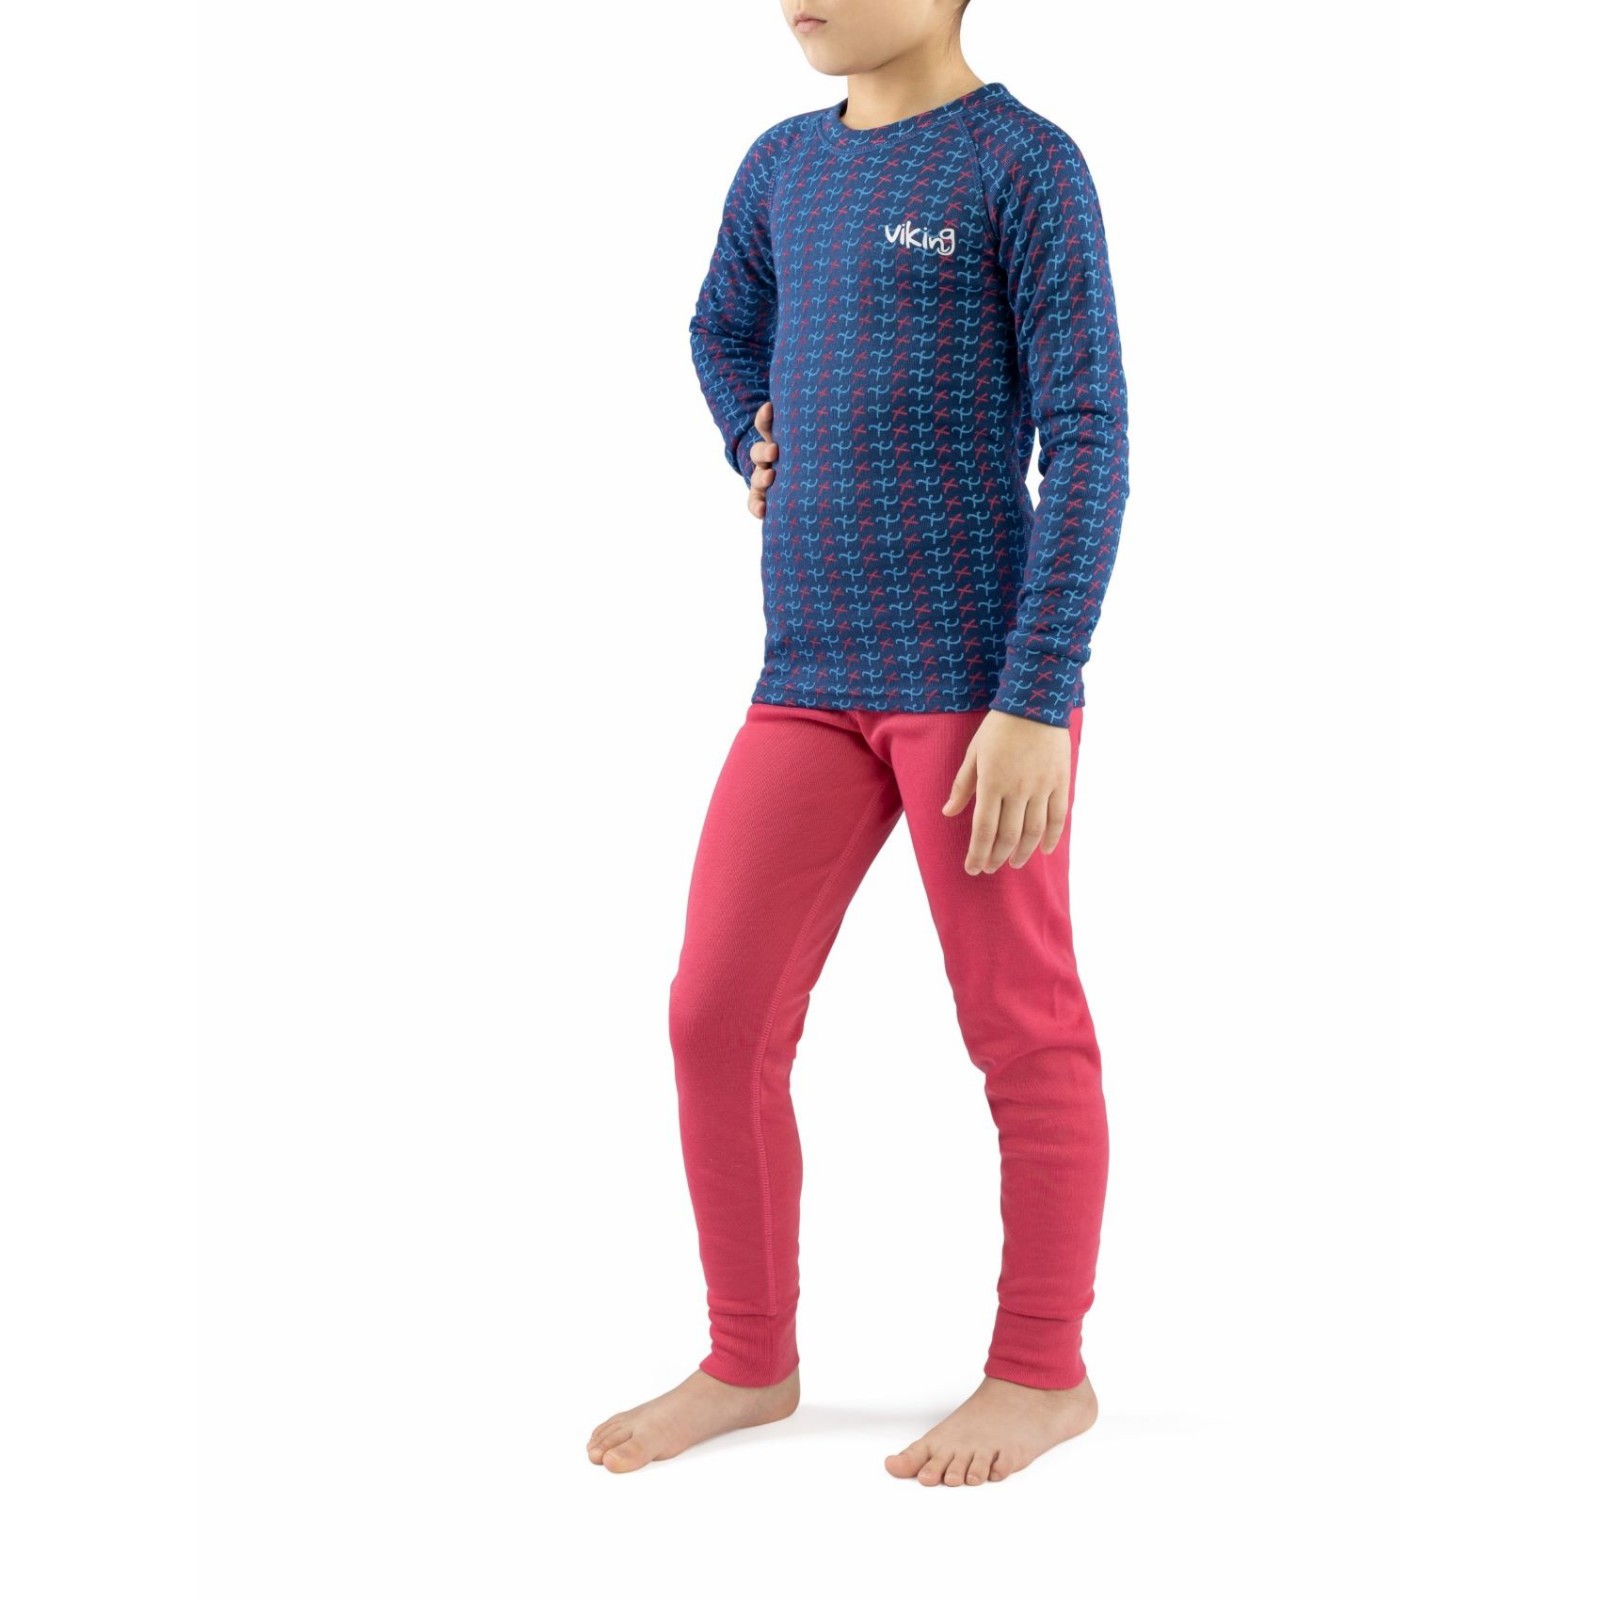 Dětské funkční prádlo Viking Nino (Set) Dětská velikost: 128 / Barva: modrá/růžová